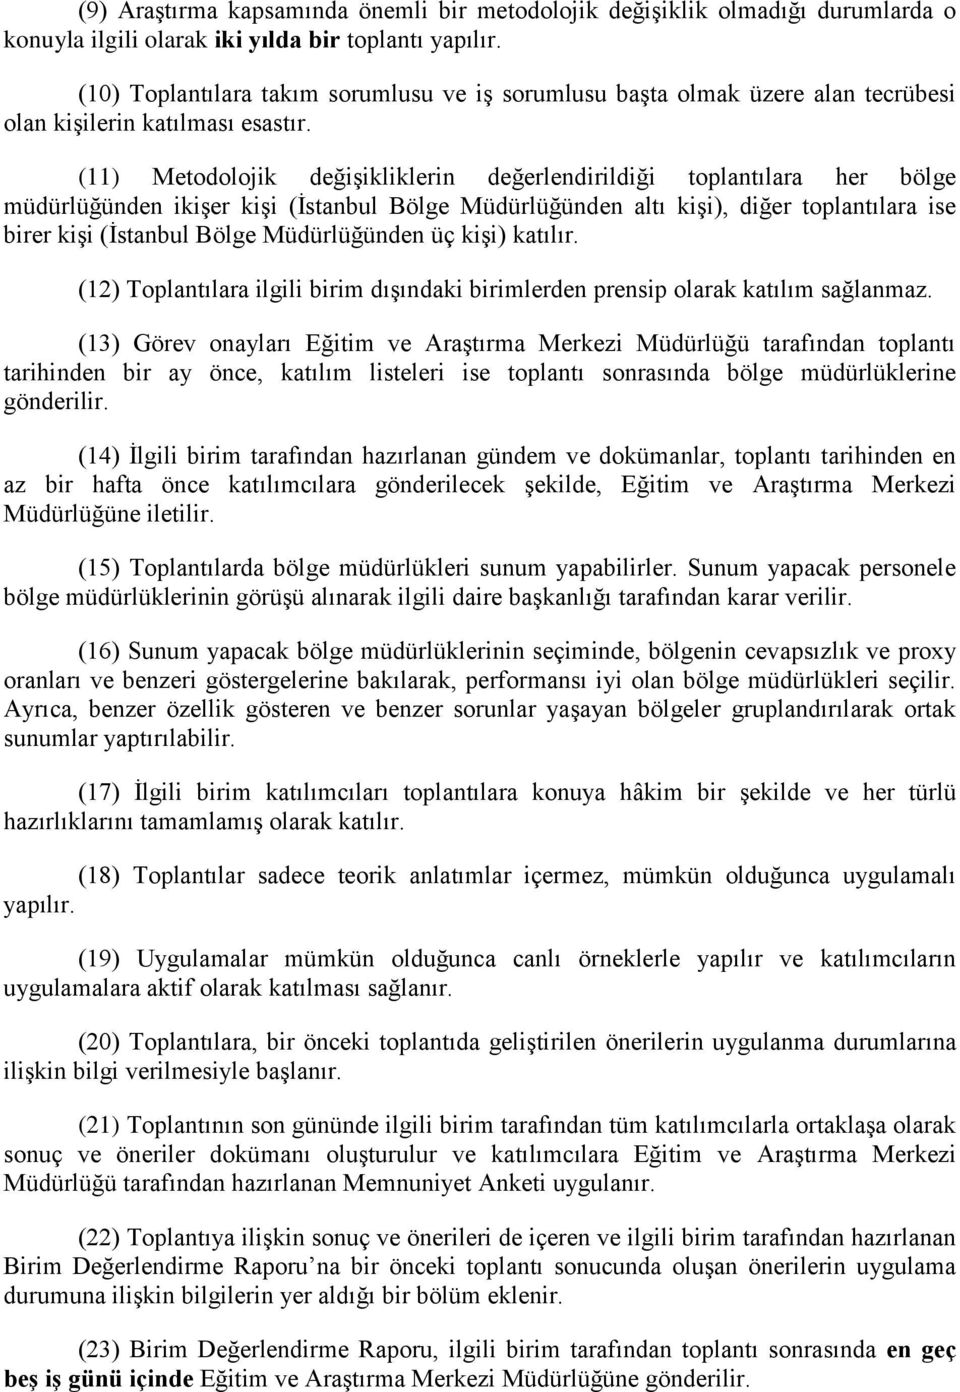 (11) Metodolojik değişikliklerin değerlendirildiği toplantılara her bölge müdürlüğünden ikişer kişi (İstanbul Bölge Müdürlüğünden altı kişi), diğer toplantılara ise birer kişi (İstanbul Bölge